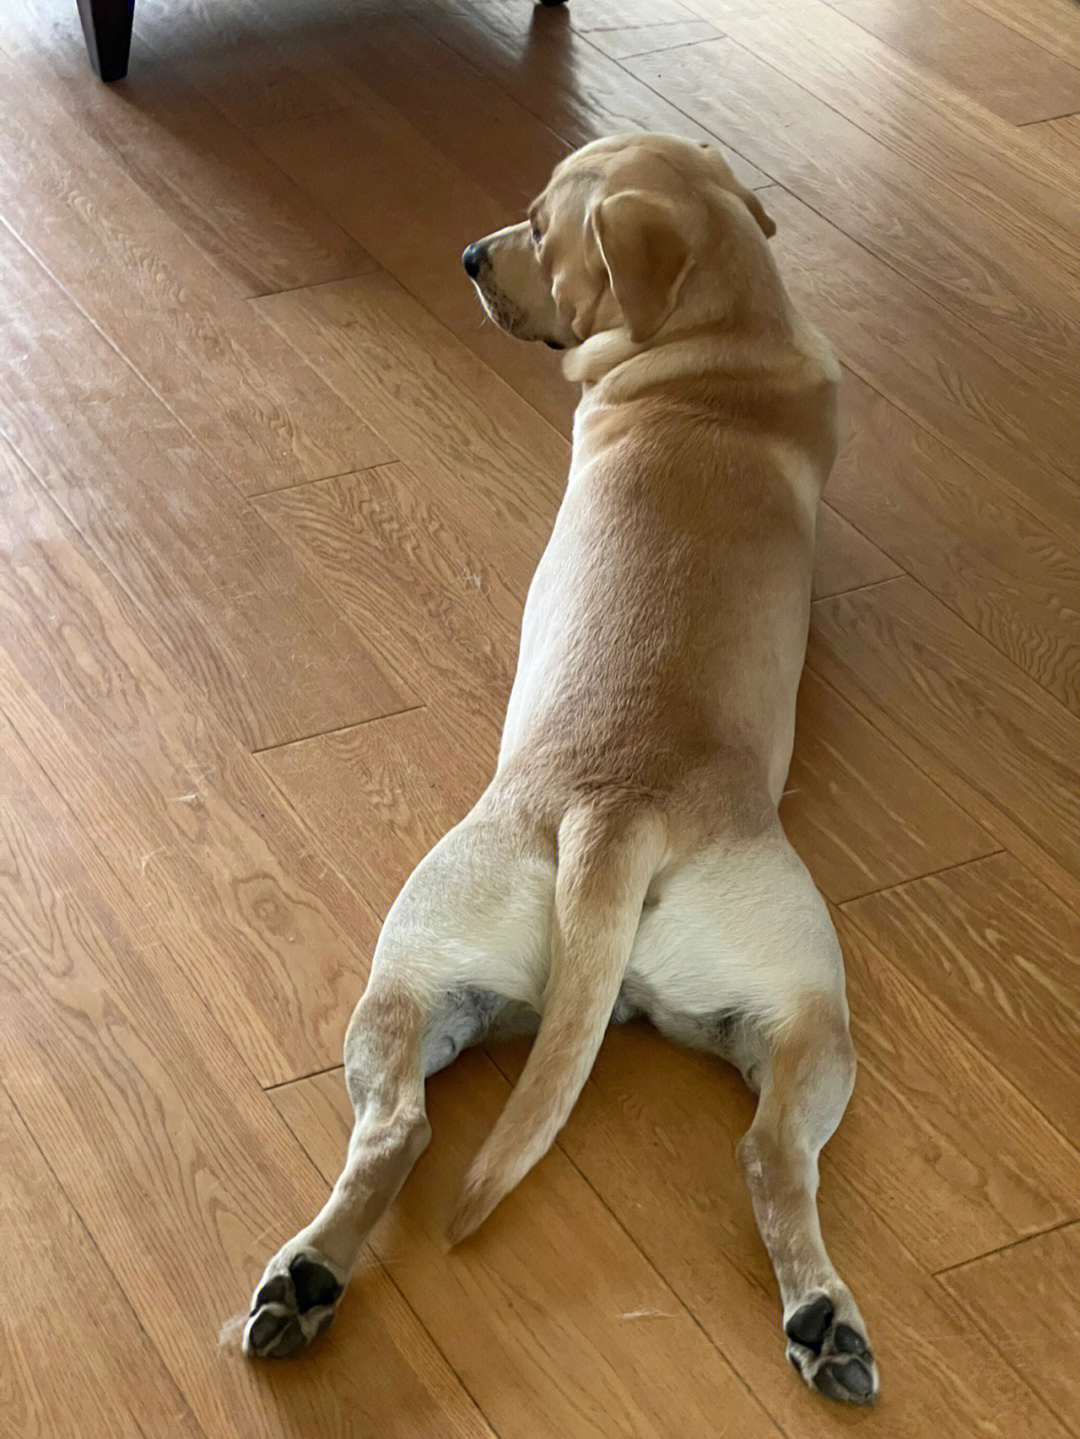 狗趴着的姿势代表图片